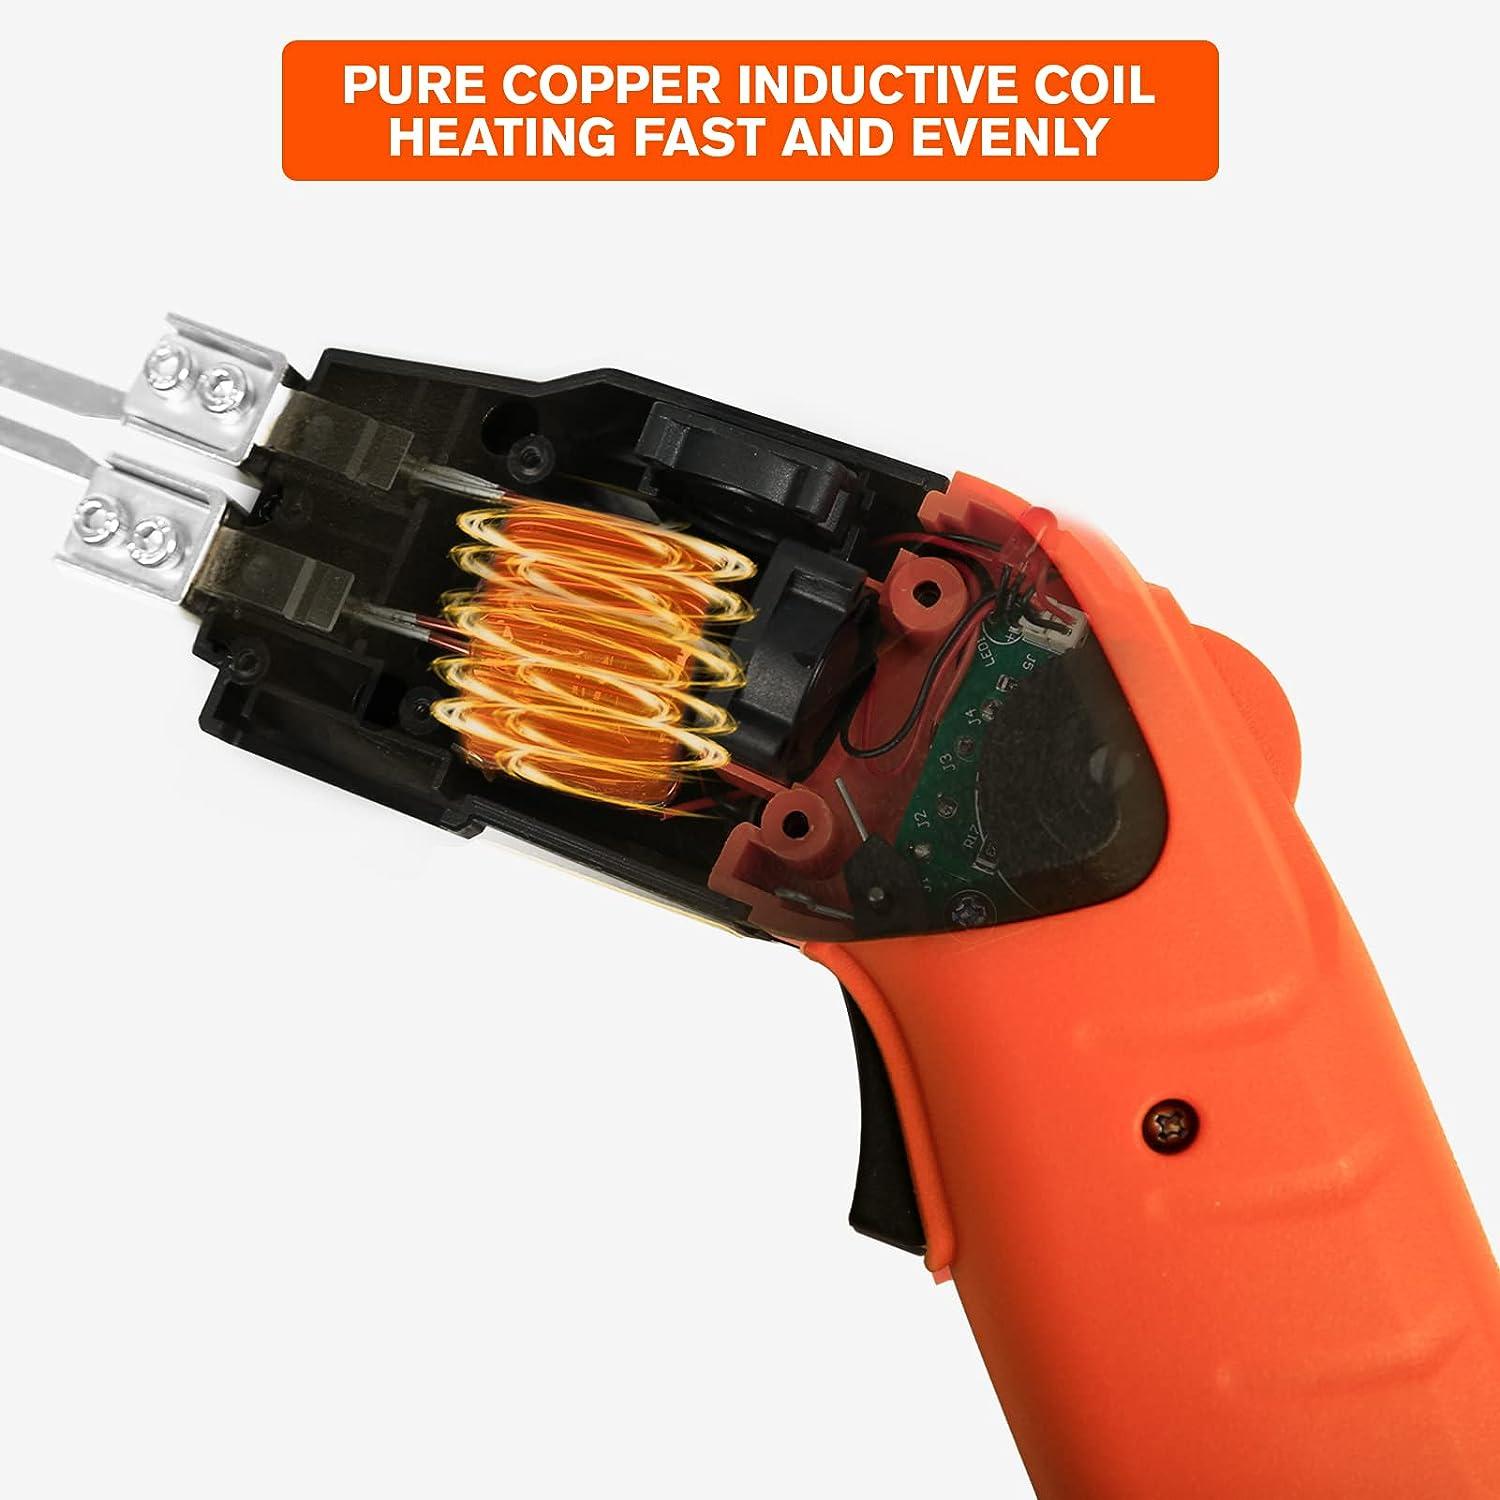 Hot Rope Cutter Electric Heat Cutter Hot Knife for Cutting Foam